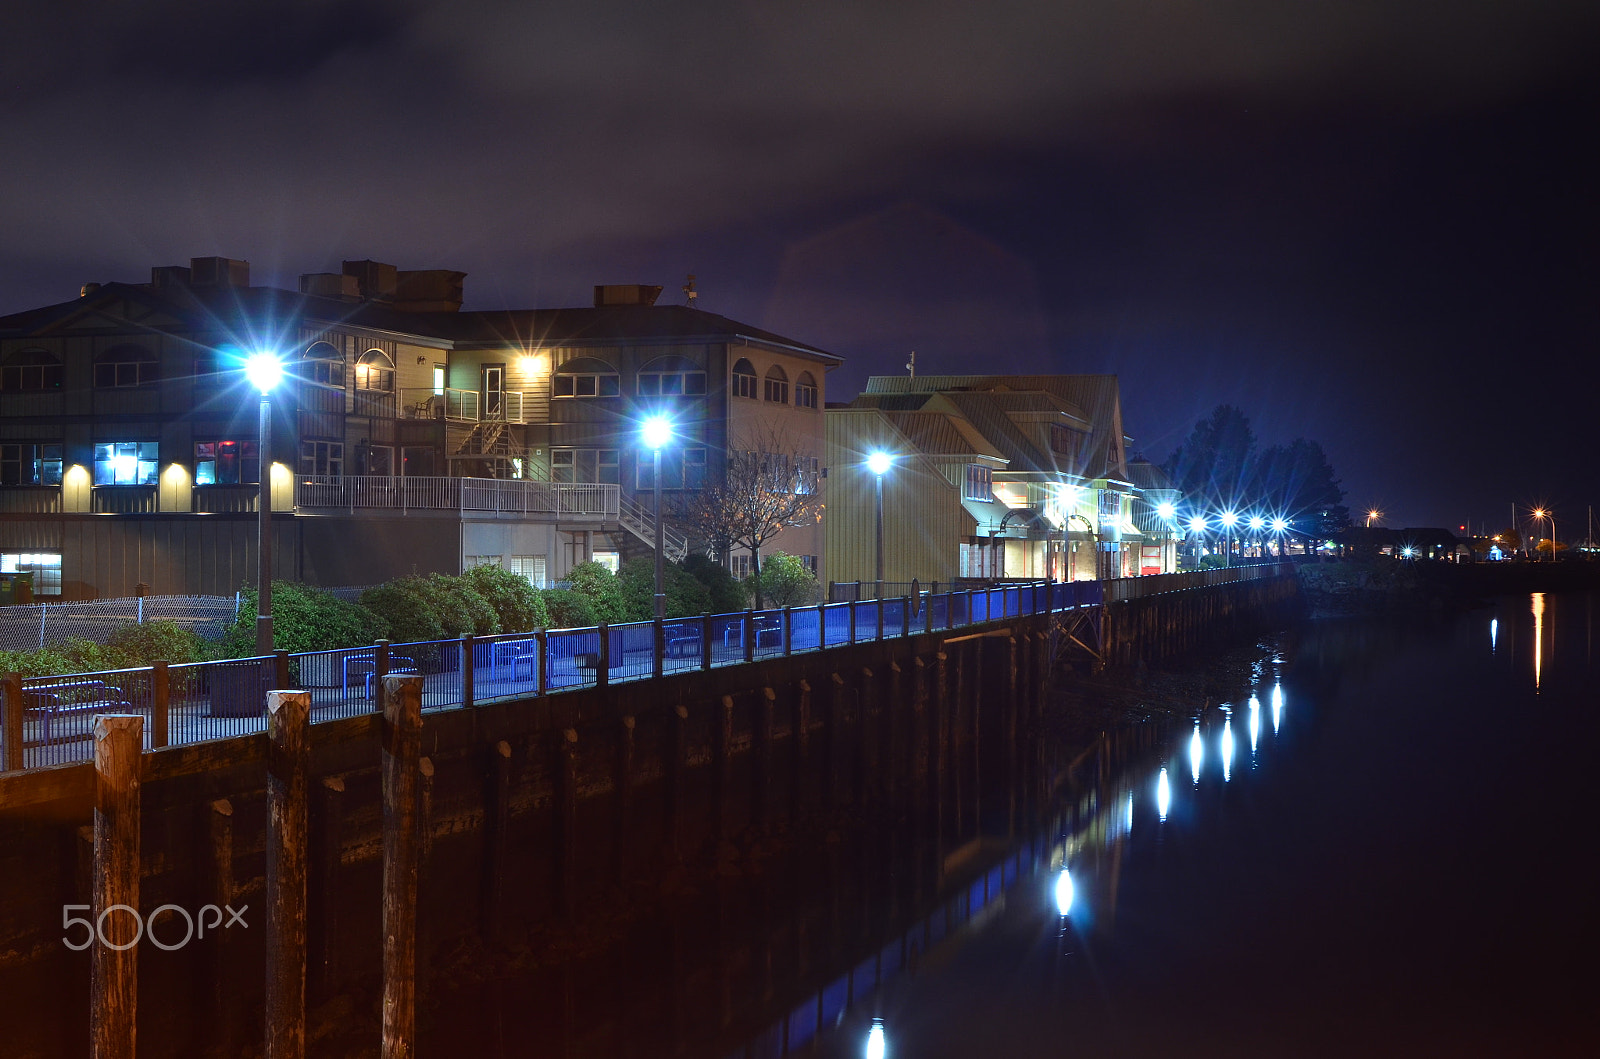 AF Zoom-Nikkor 35-80mm f/4-5.6D N sample photo. Campbell river docks at night photography